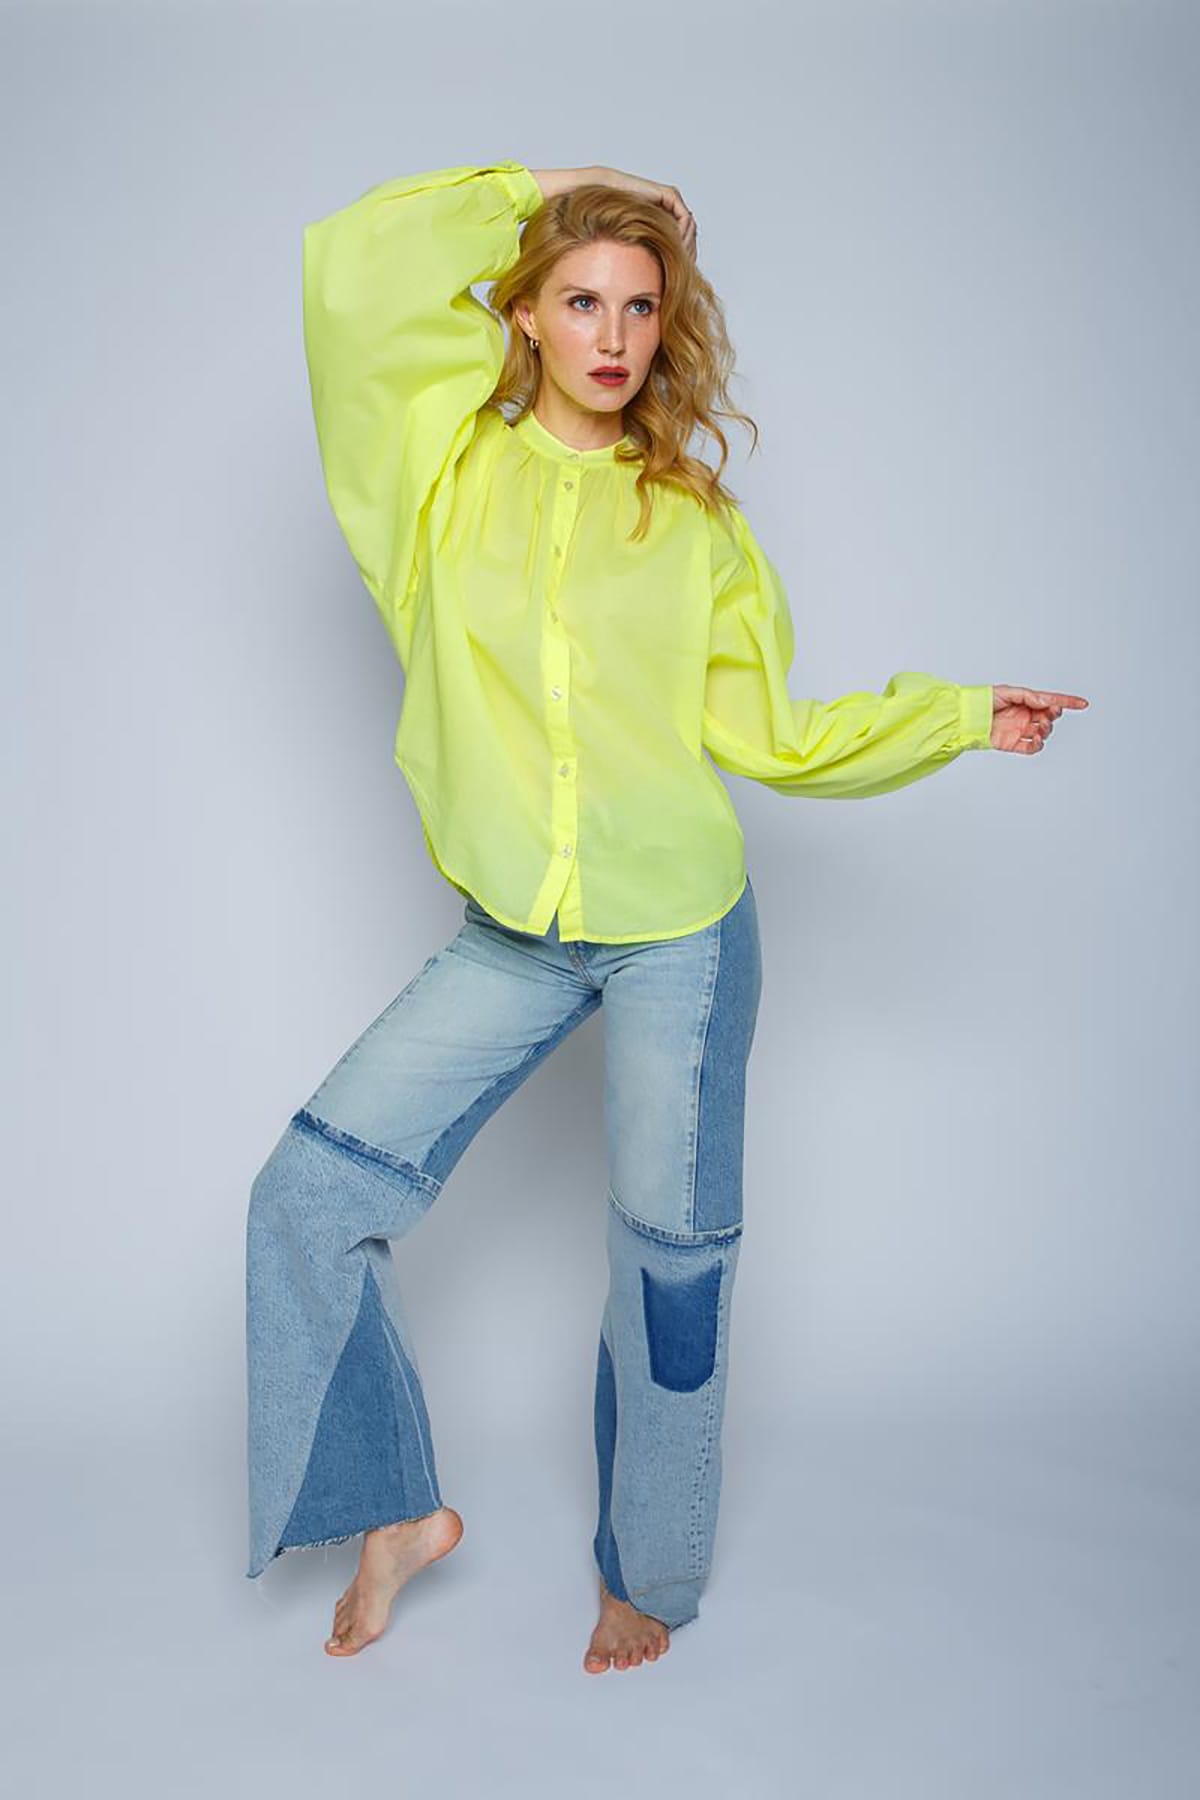 Lockere Bluse mit weiten Ärmeln neon yellow Bluse Emily van den Bergh 